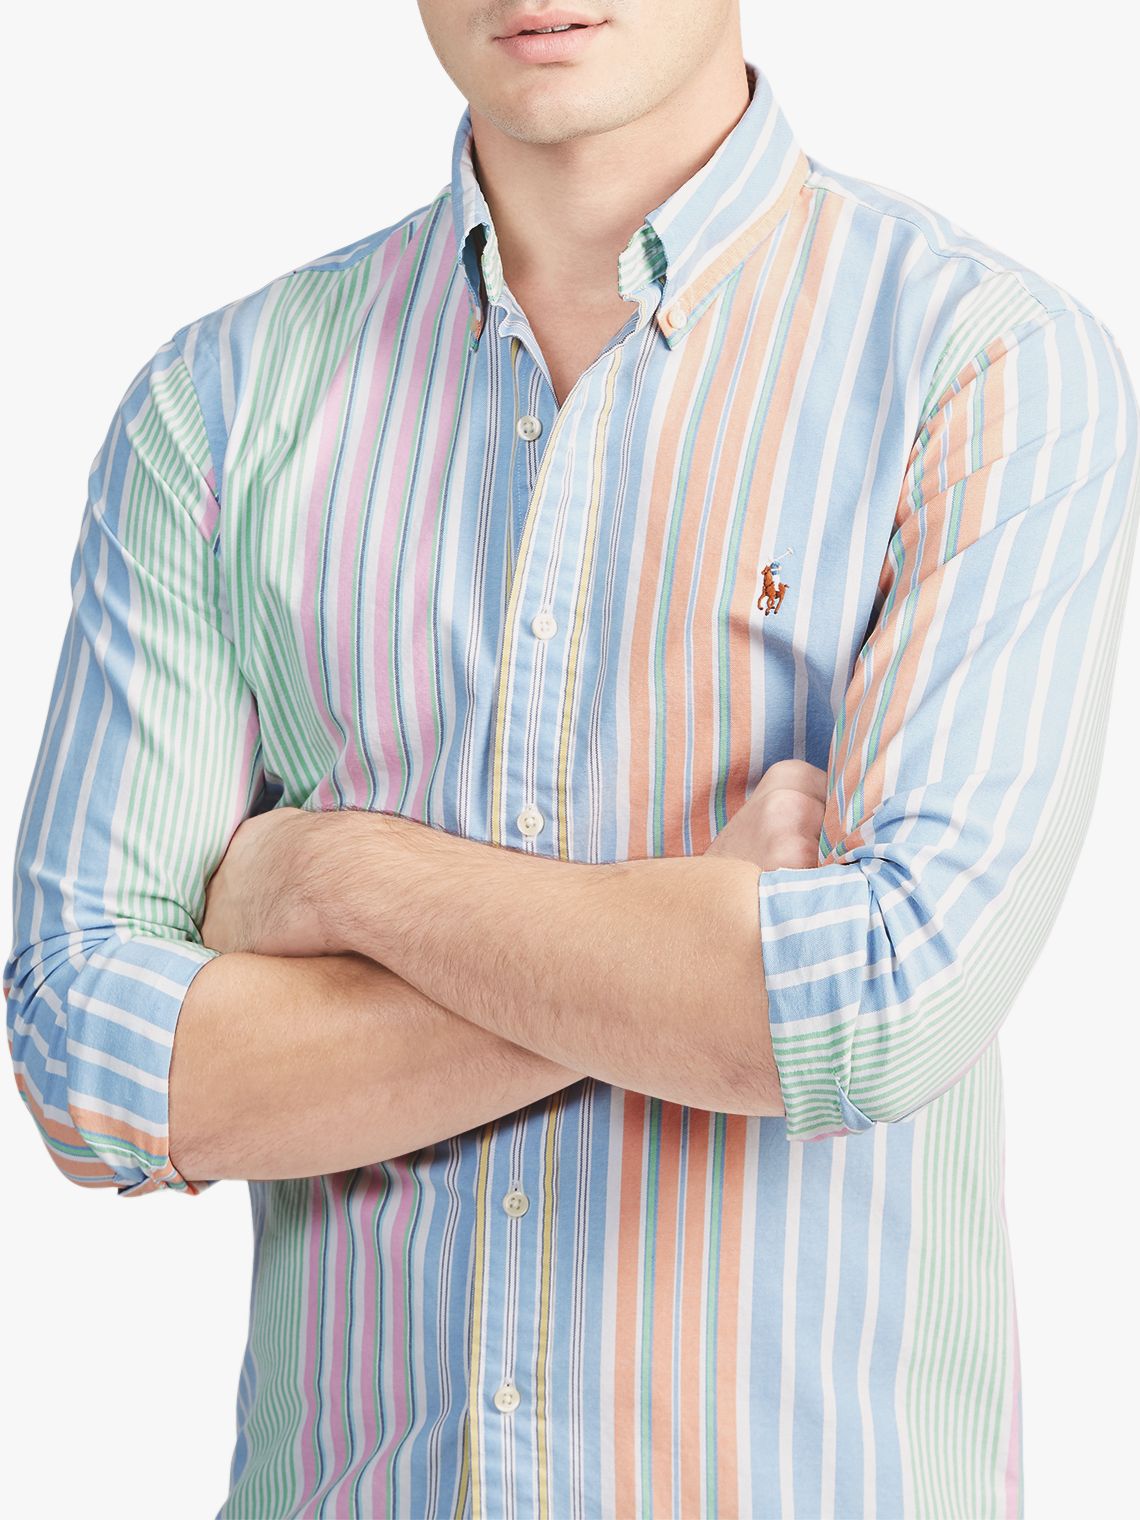 ralph lauren pastel striped shirt